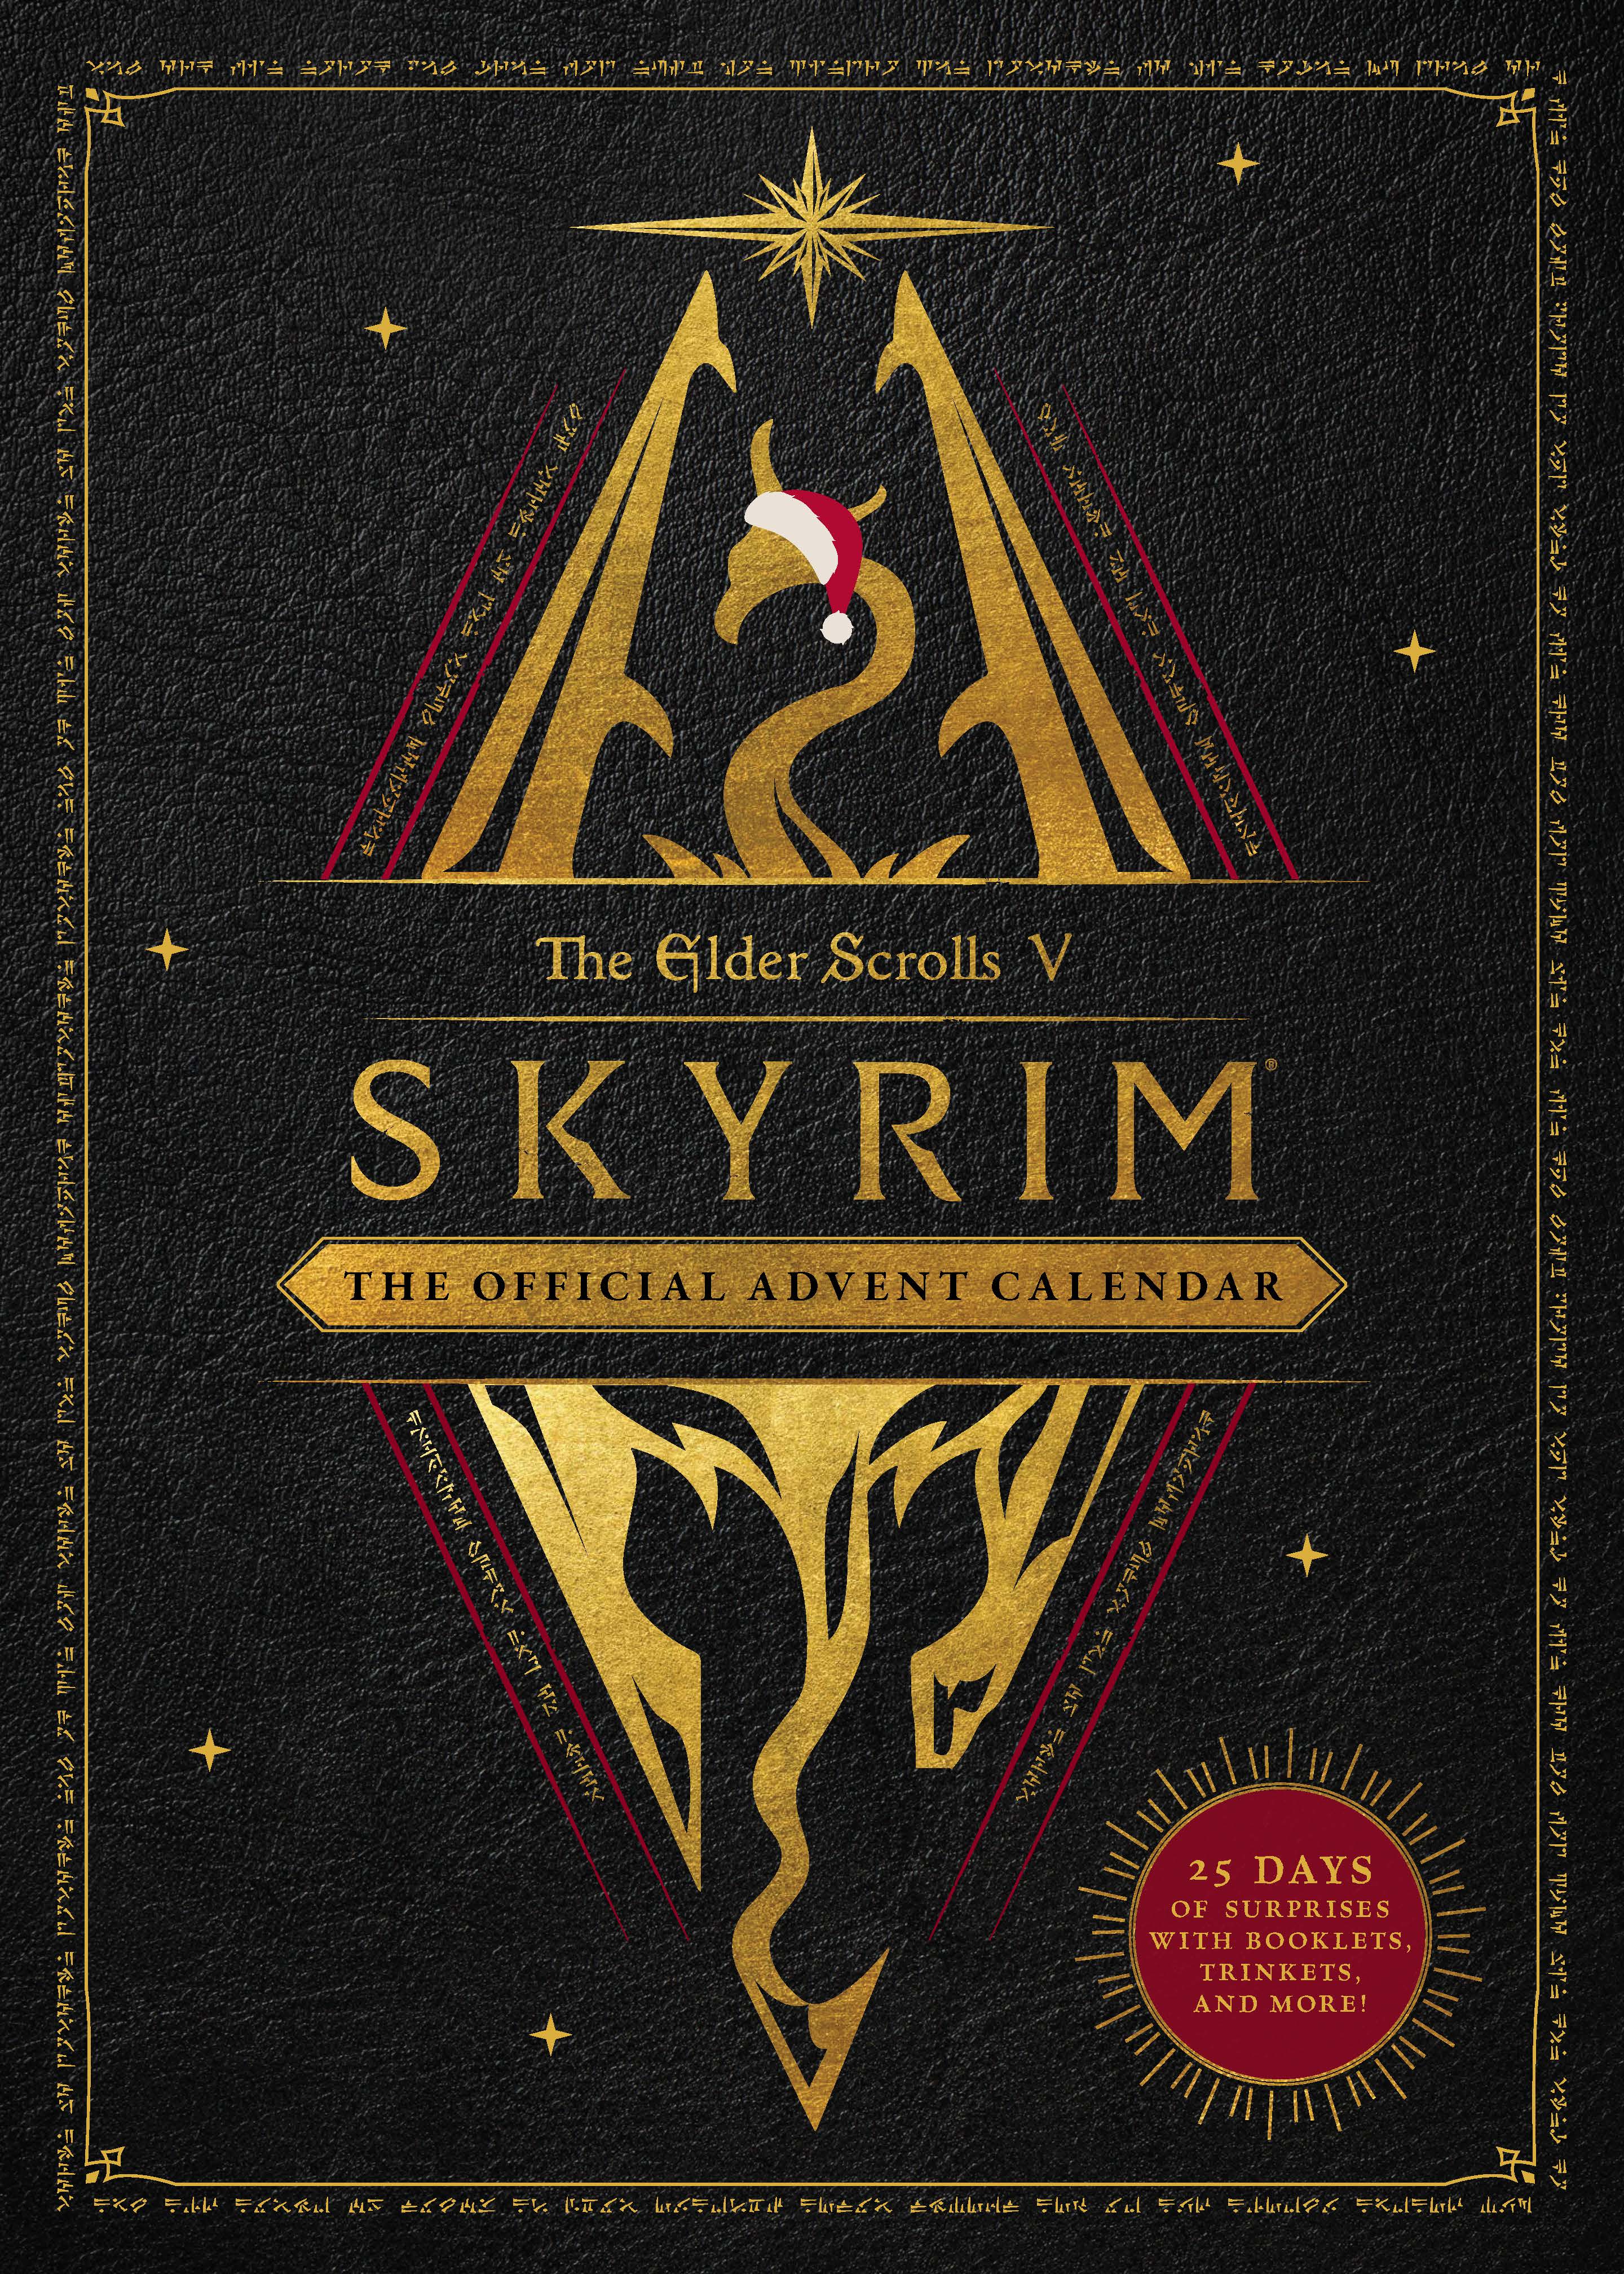 The Elder Scrolls V: Skyrim The Official Advent Calendar Titan Books